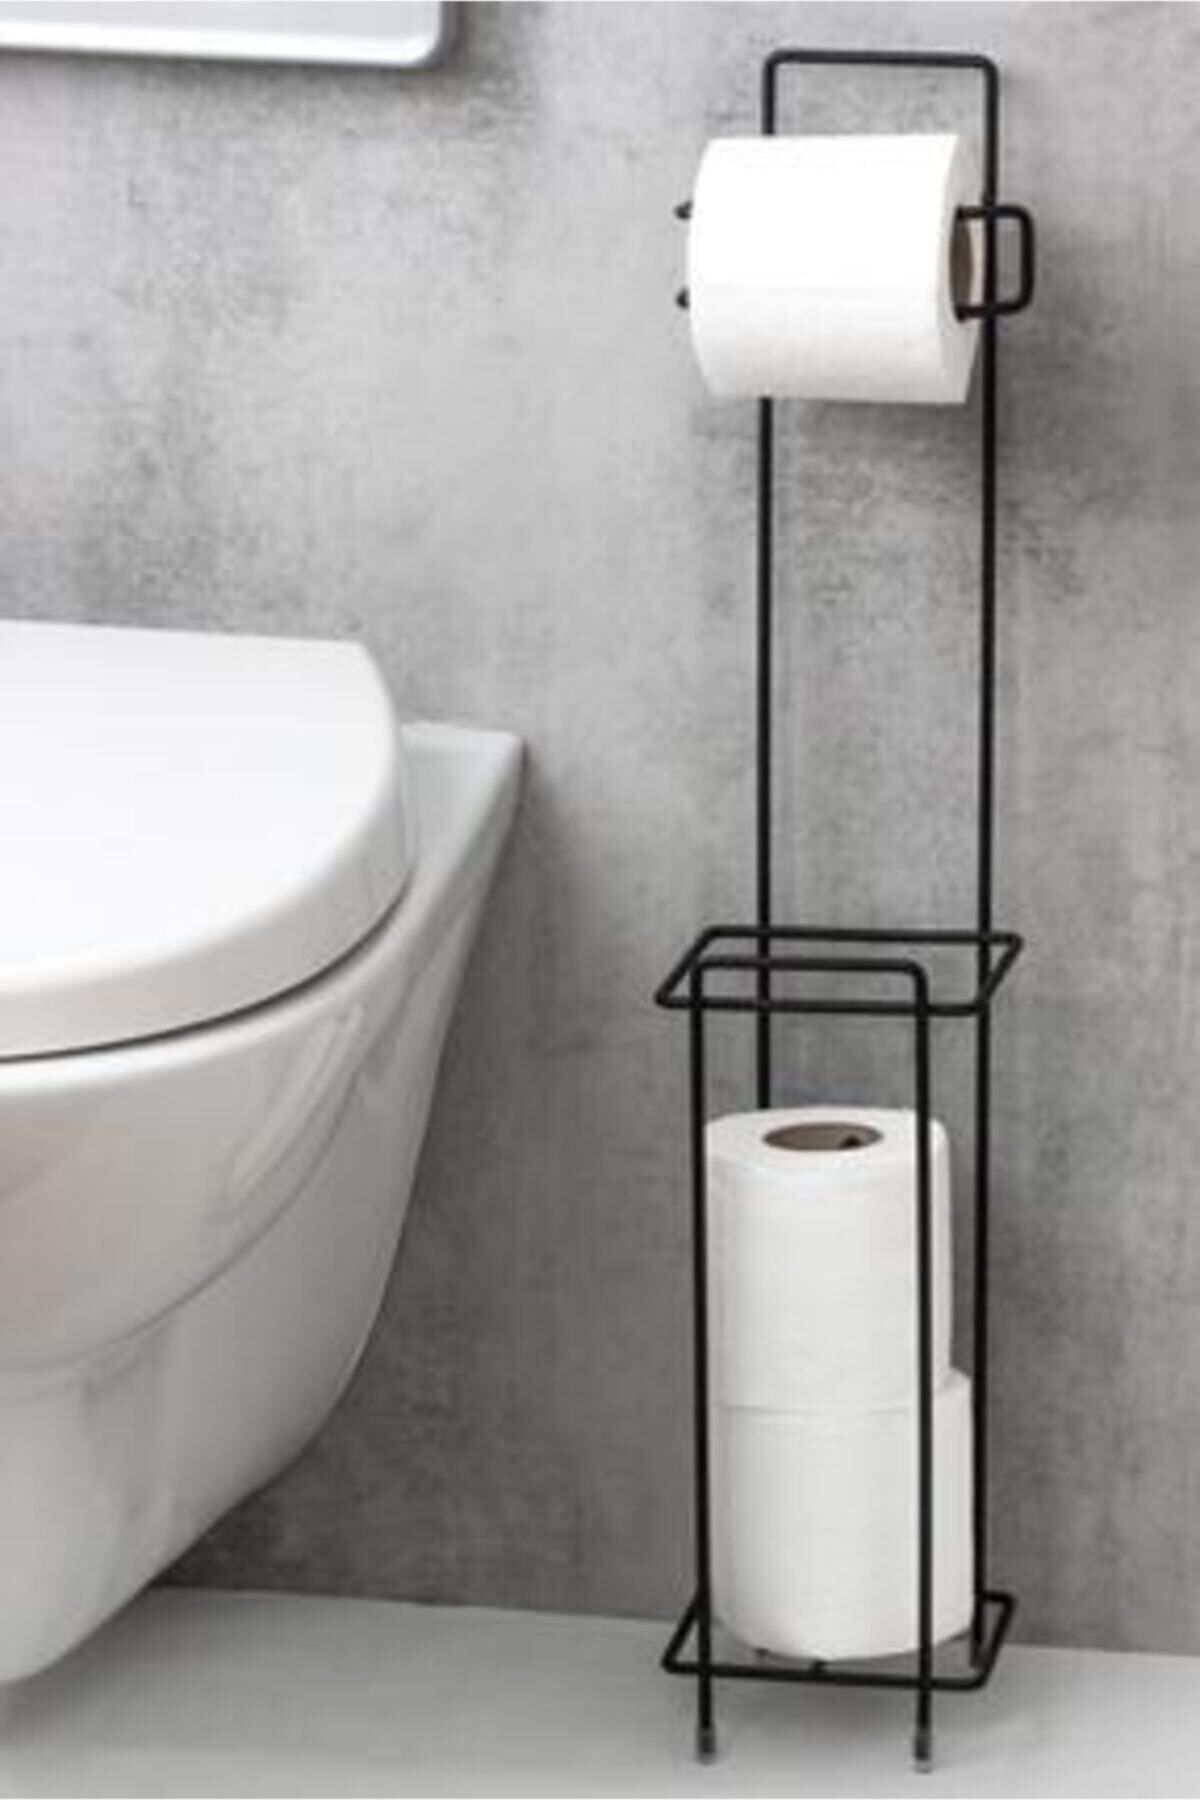 biray home Tuvalet Kağıtlık Ayaklı Wclik , Peçetelik Banyo Aksesuarı